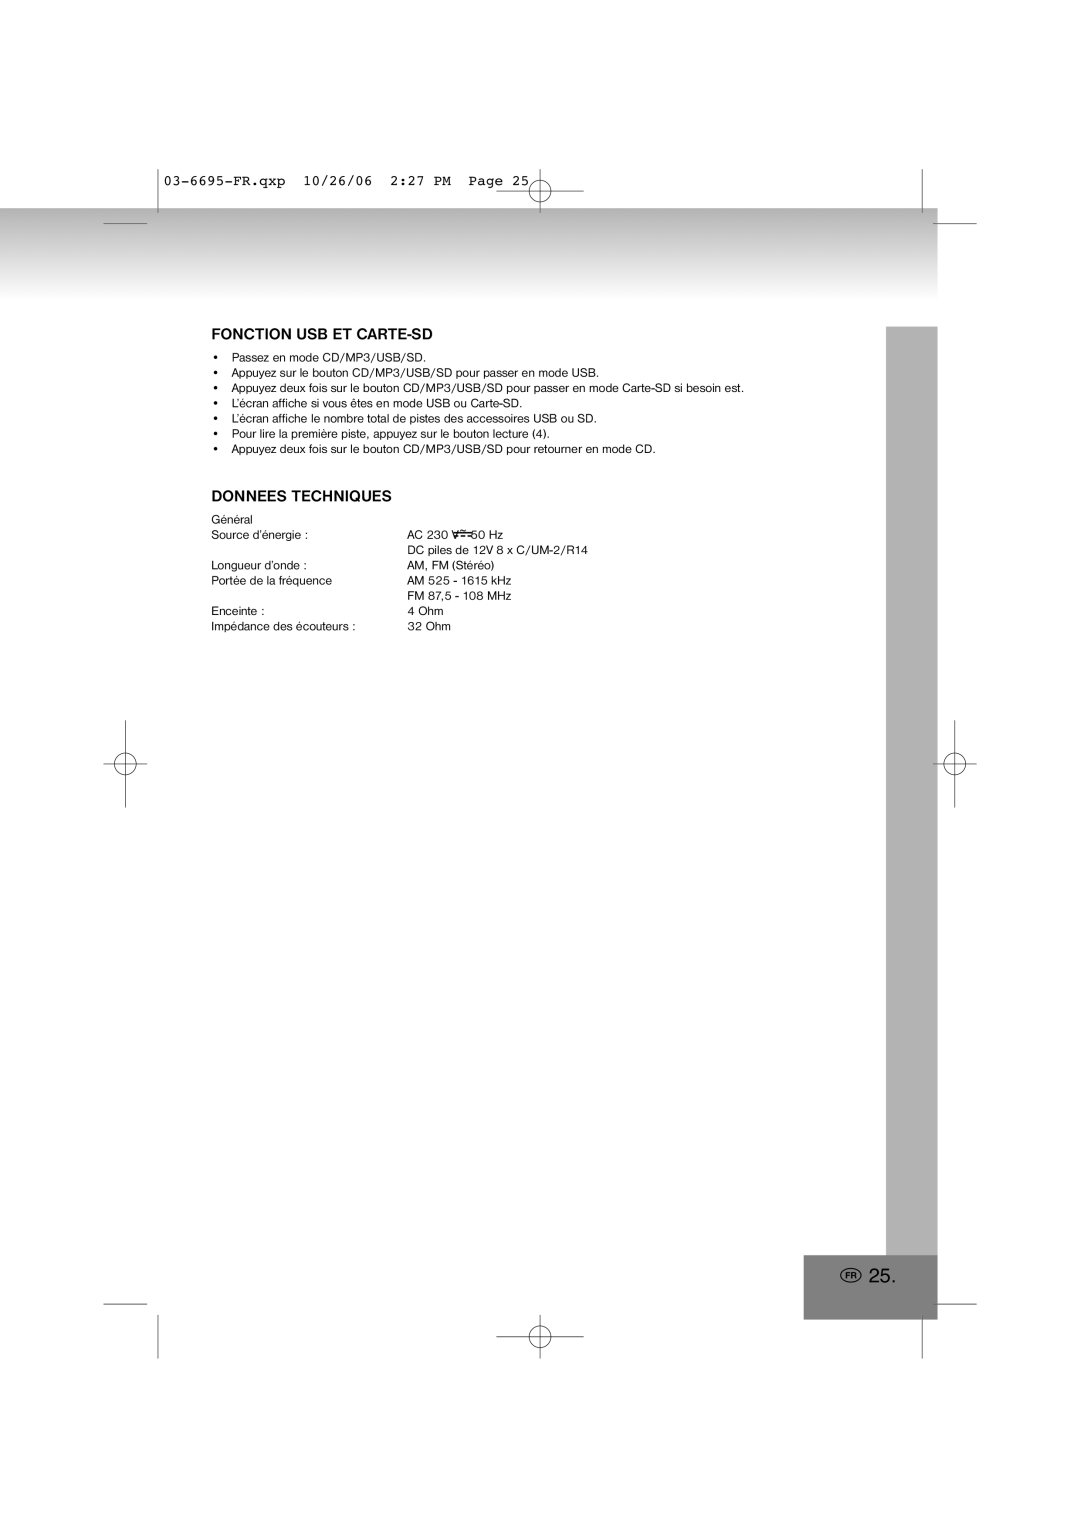 Elta manual Fonction Usb Et Carte-Sd, Donnees Techniques, 03-6695-FR.qxp10/26/06 2 27 PM Page 